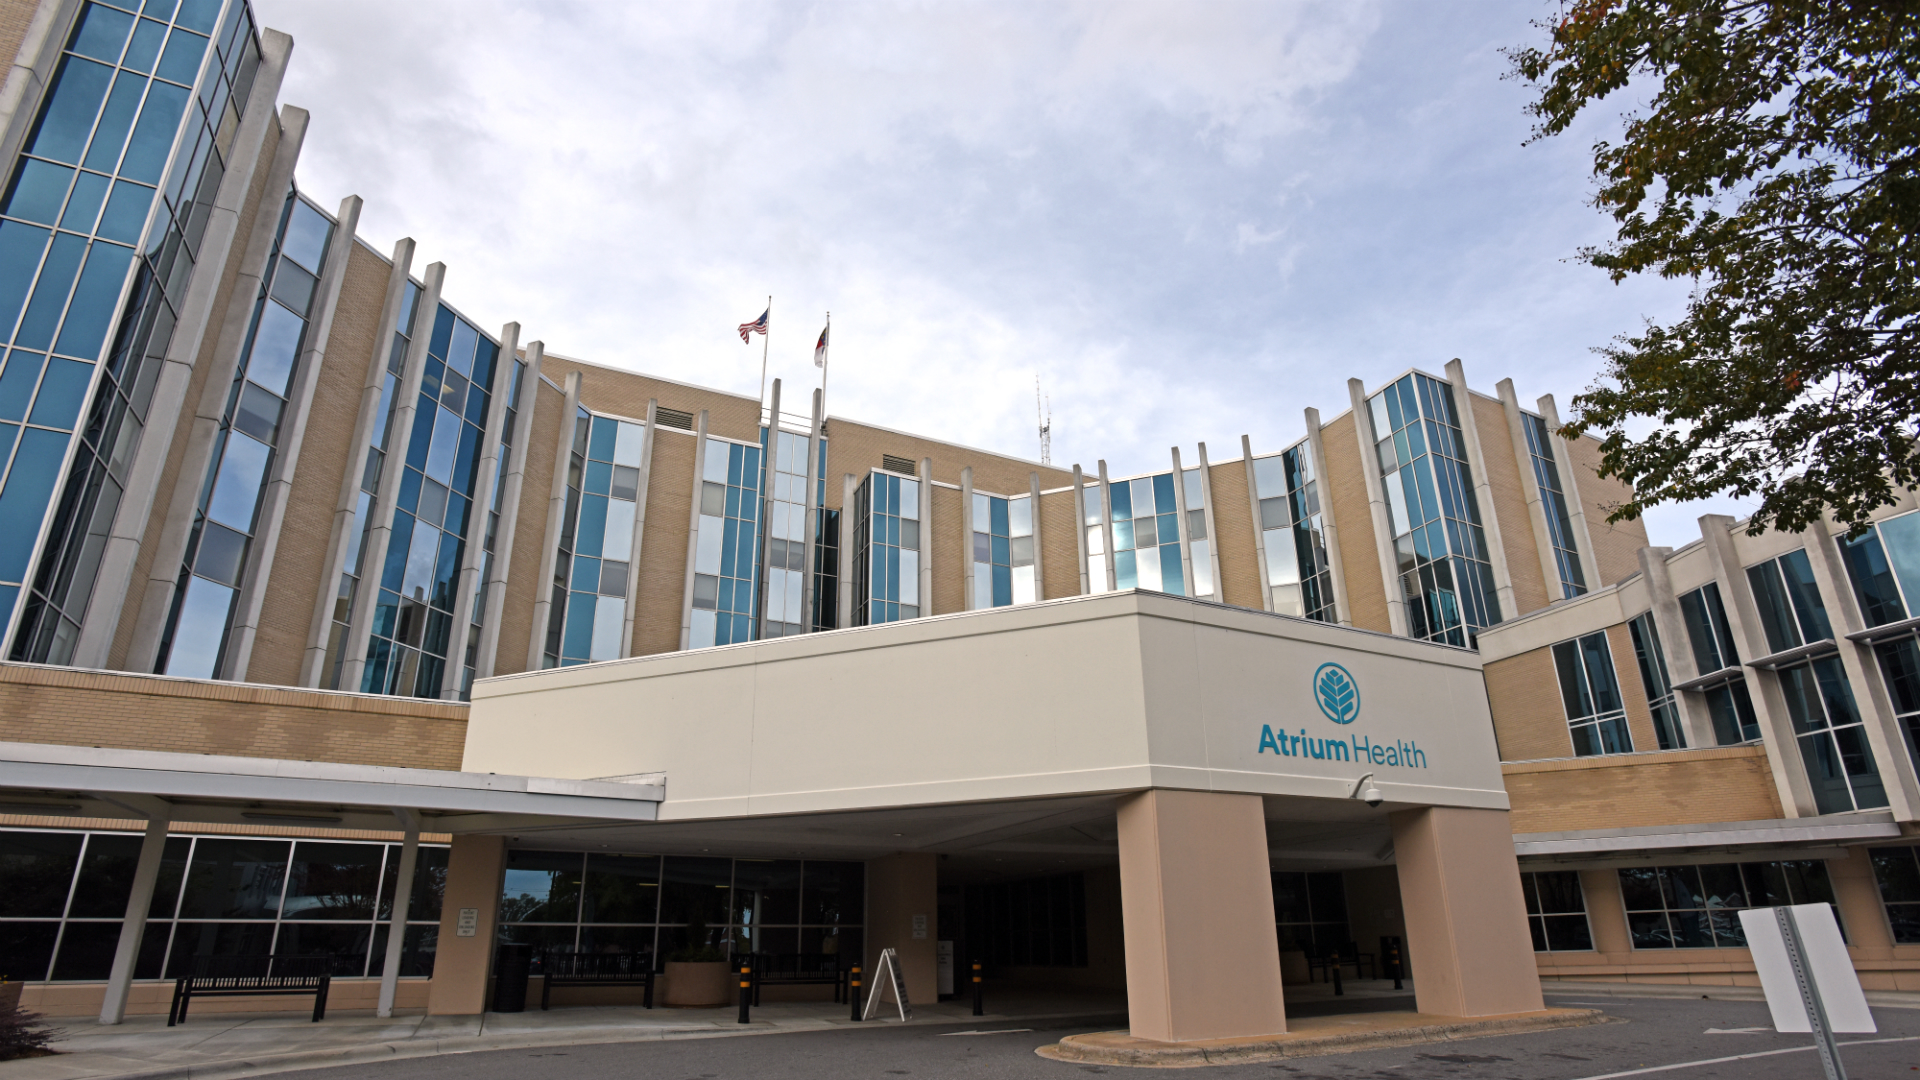 Atrium Health Cleveland became the hospital's official name on Nov. 1, 2018. 